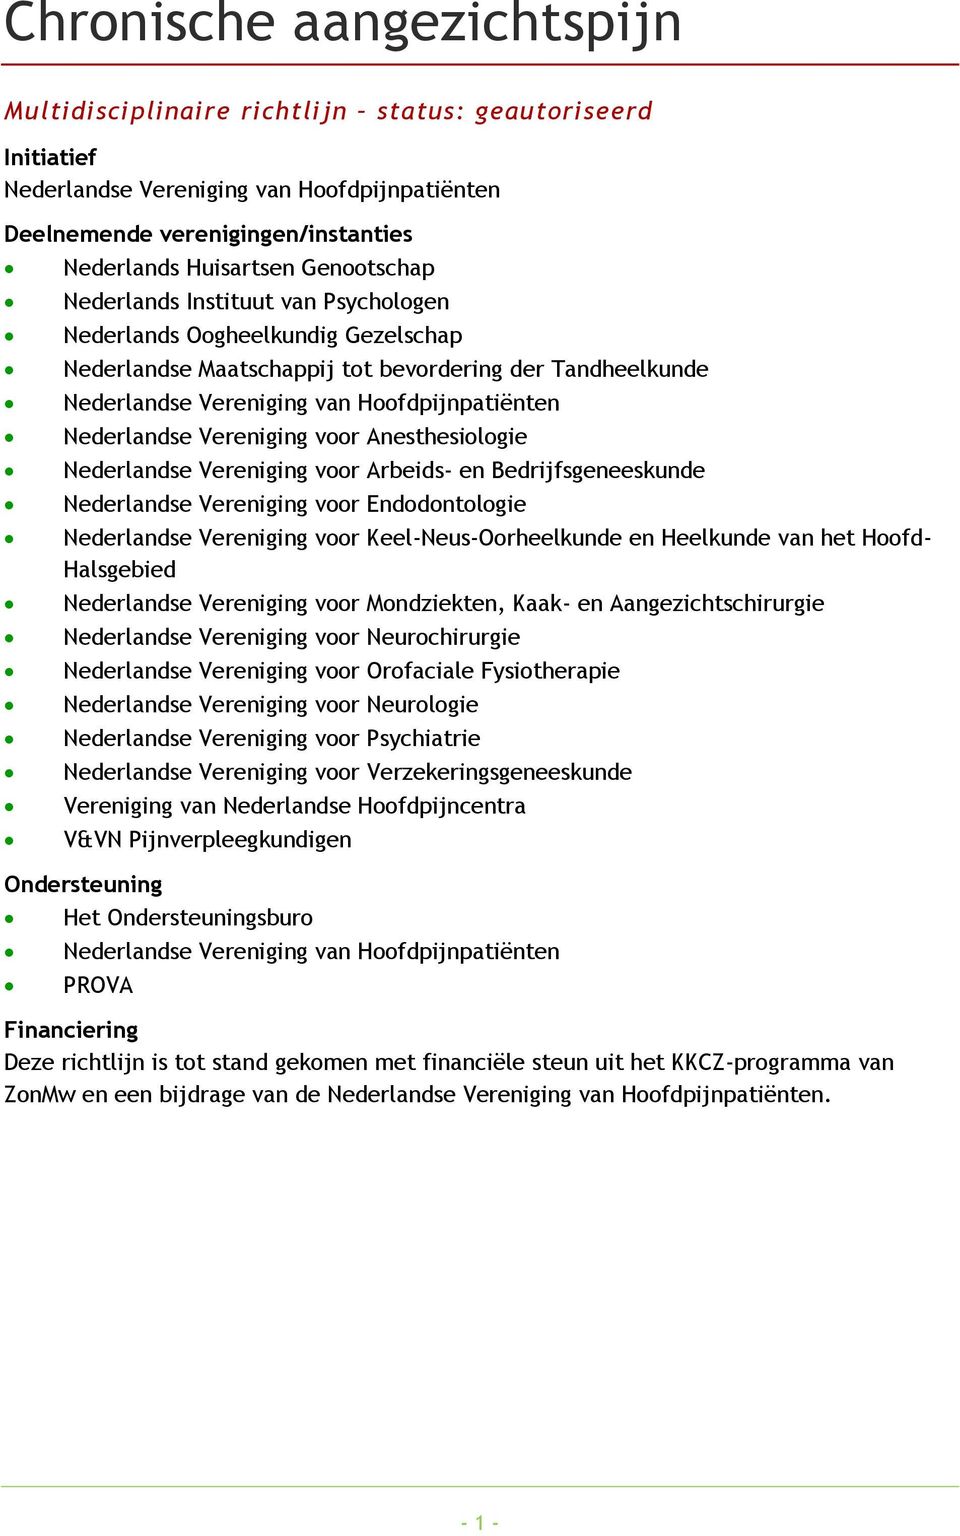 Nederlandse Vereniging voor Anesthesiologie Nederlandse Vereniging voor Arbeids- en Bedrijfsgeneeskunde Nederlandse Vereniging voor Endodontologie Nederlandse Vereniging voor Keel-Neus-Oorheelkunde